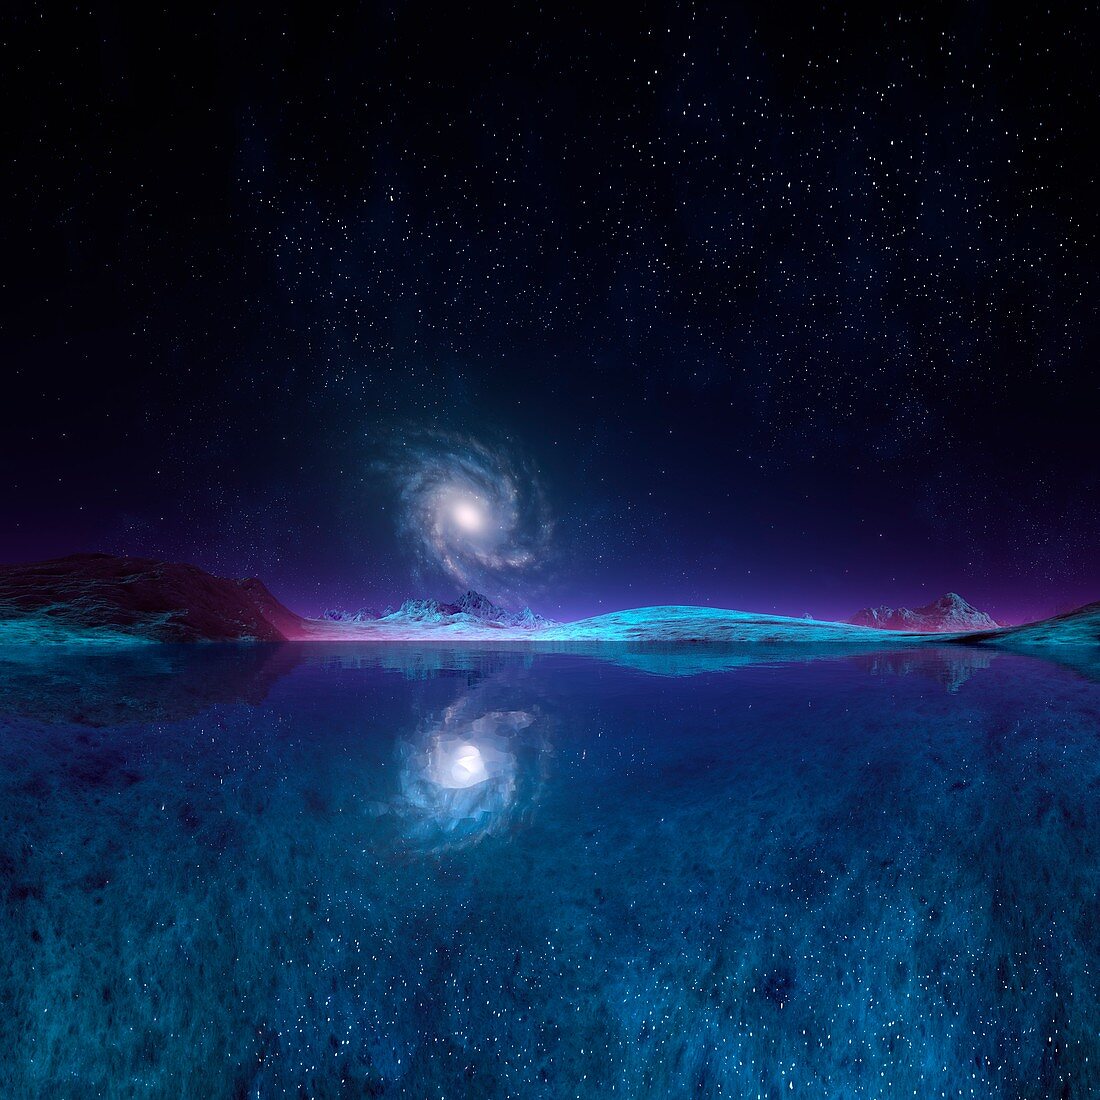 Galaxy seen from an alien planet,artwork